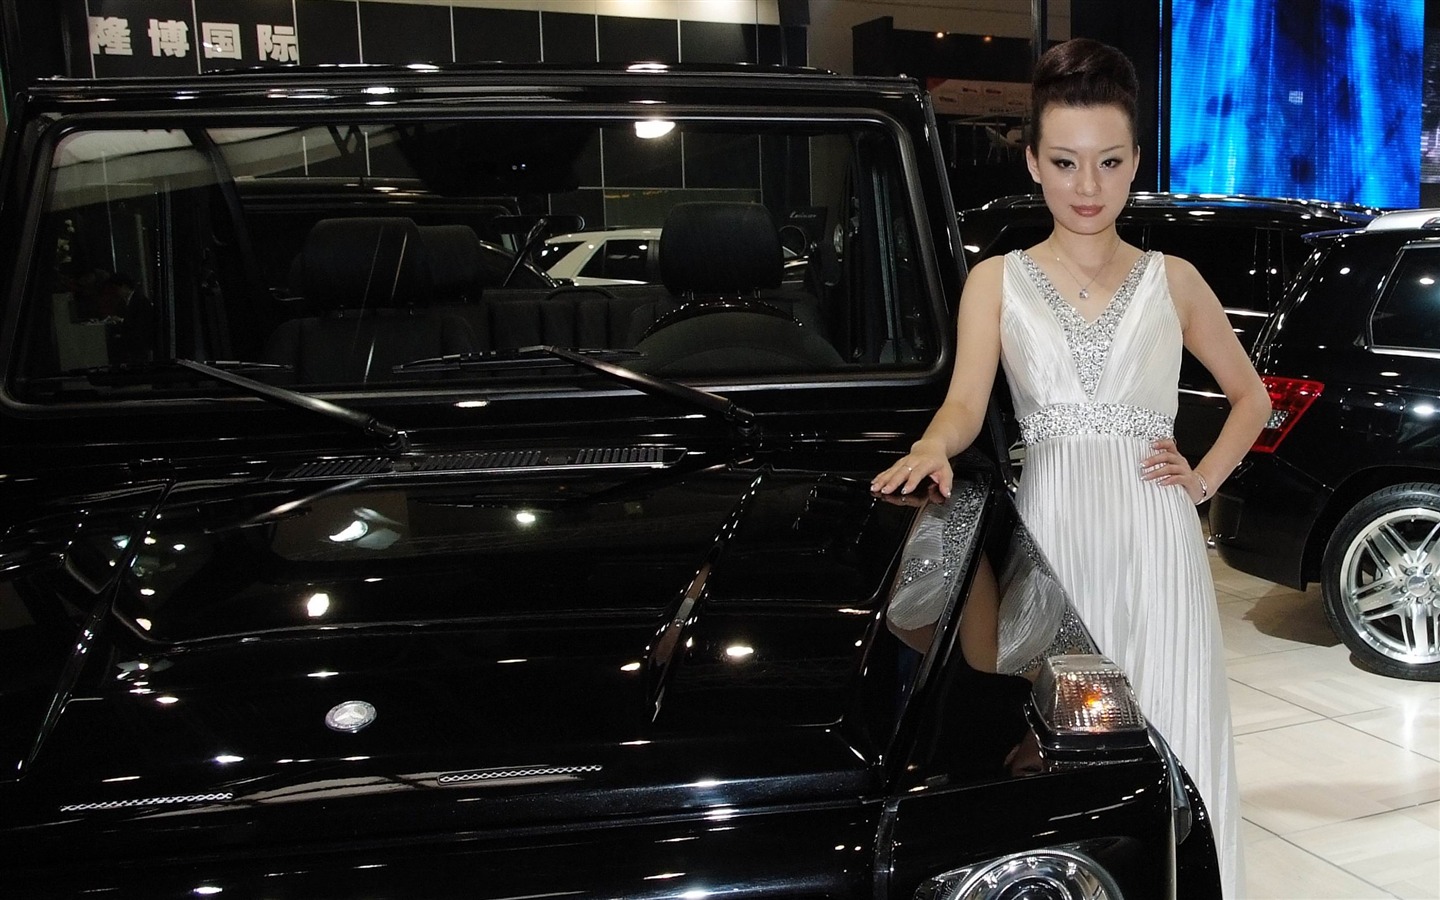 2010 v Pekingu Mezinárodním autosalonu Heung Che krása (prutu práce) #7 - 1440x900